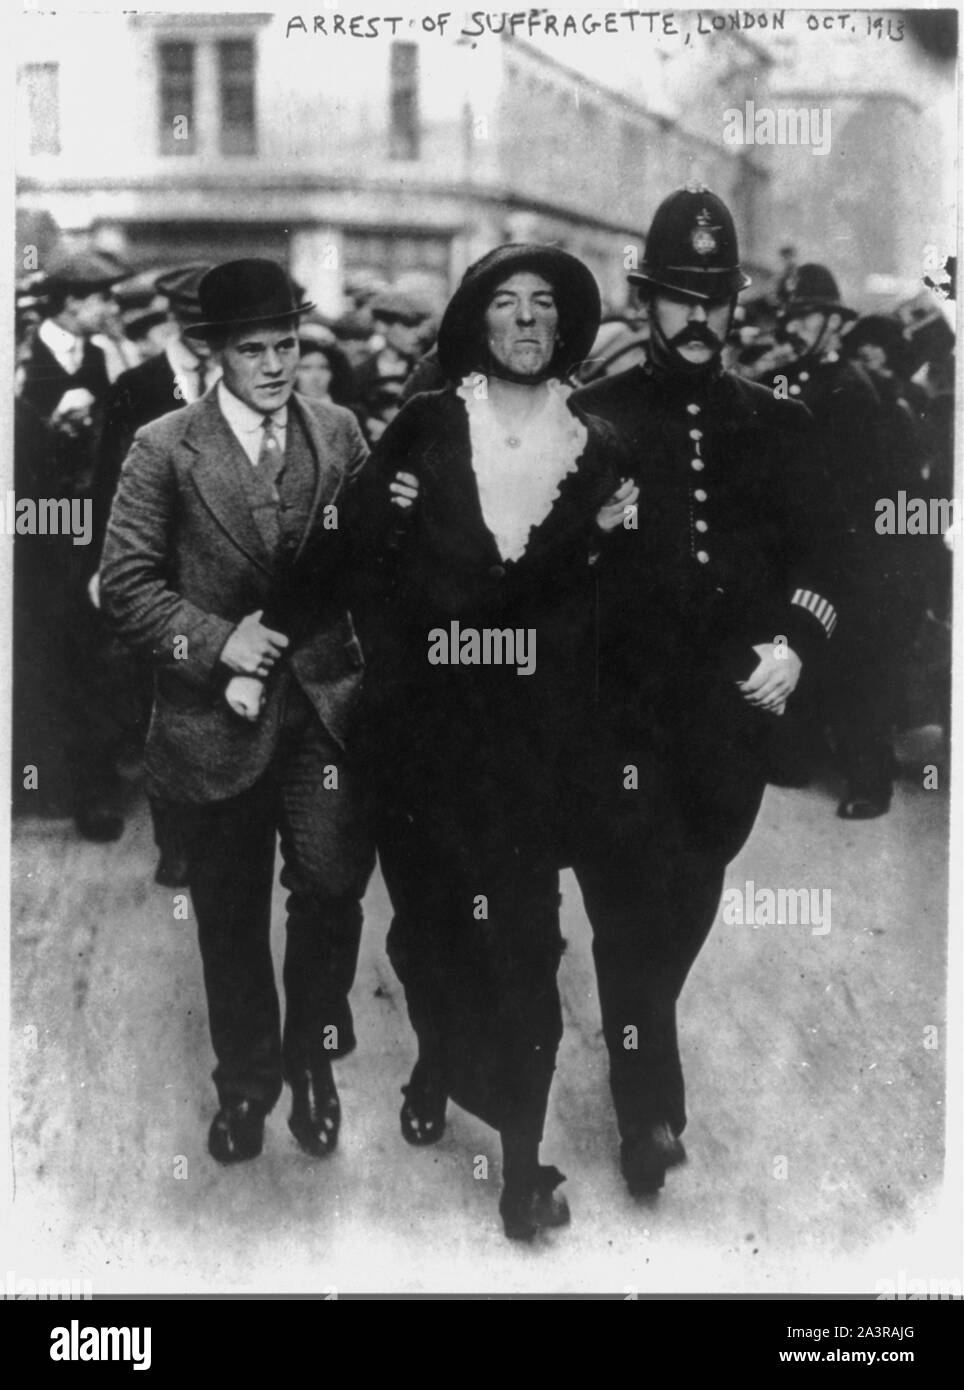 Suffragettes - Londra - Arresto di Suffragette - Ott. 1913 Foto Stock